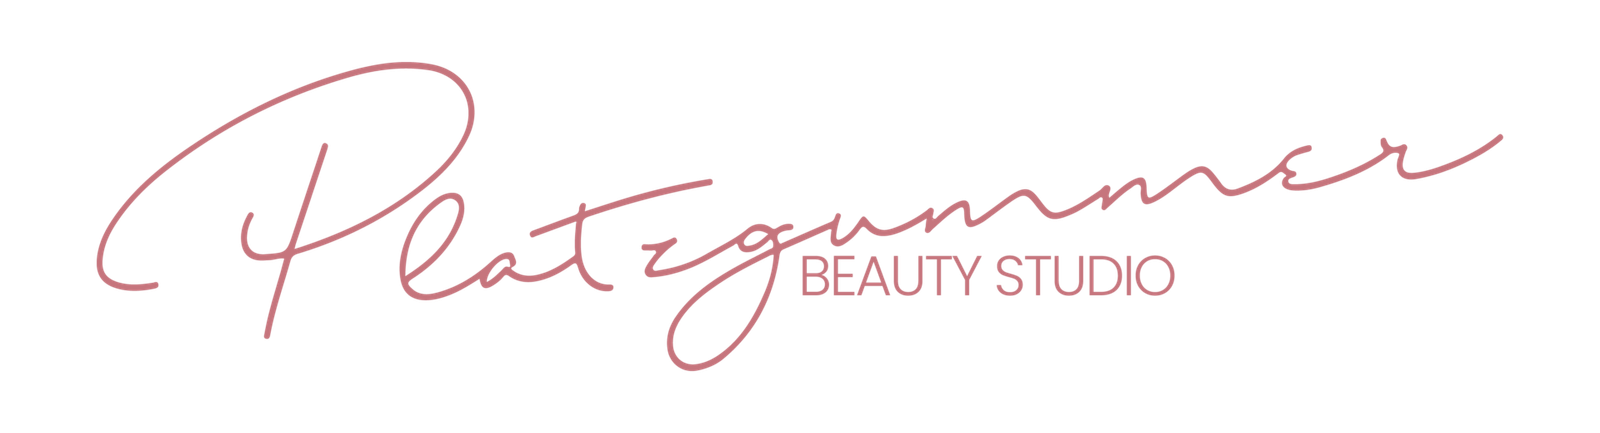 Platzgummer Beauty Studio